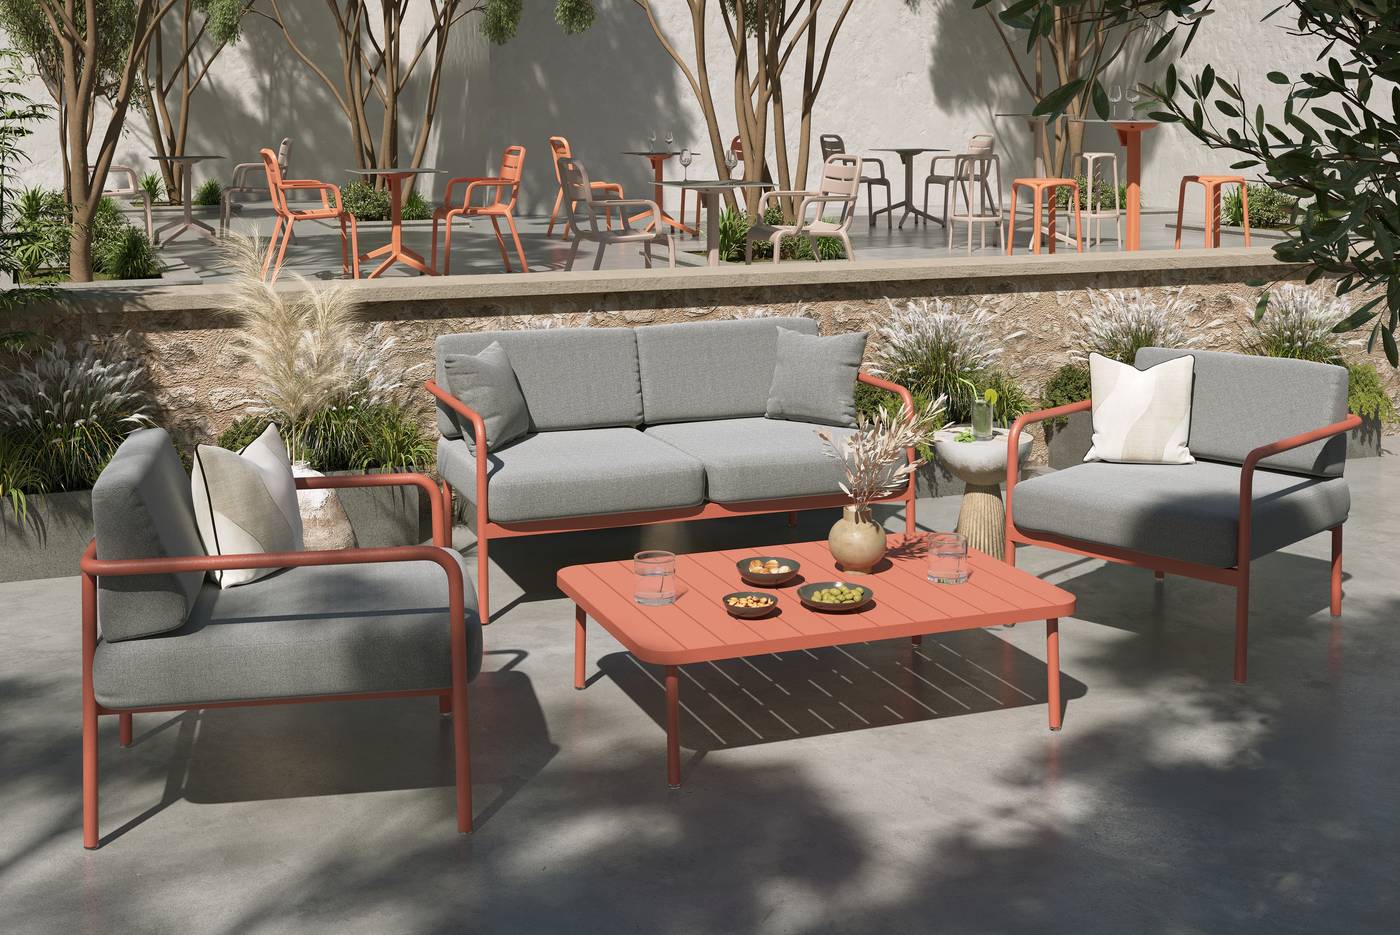 Conjunto Aluminio Cannes - Conjunto de jardín formado por sofá 2 plazas, 2 sillones y mesa de centro. Disponible en dos colores diferentes.